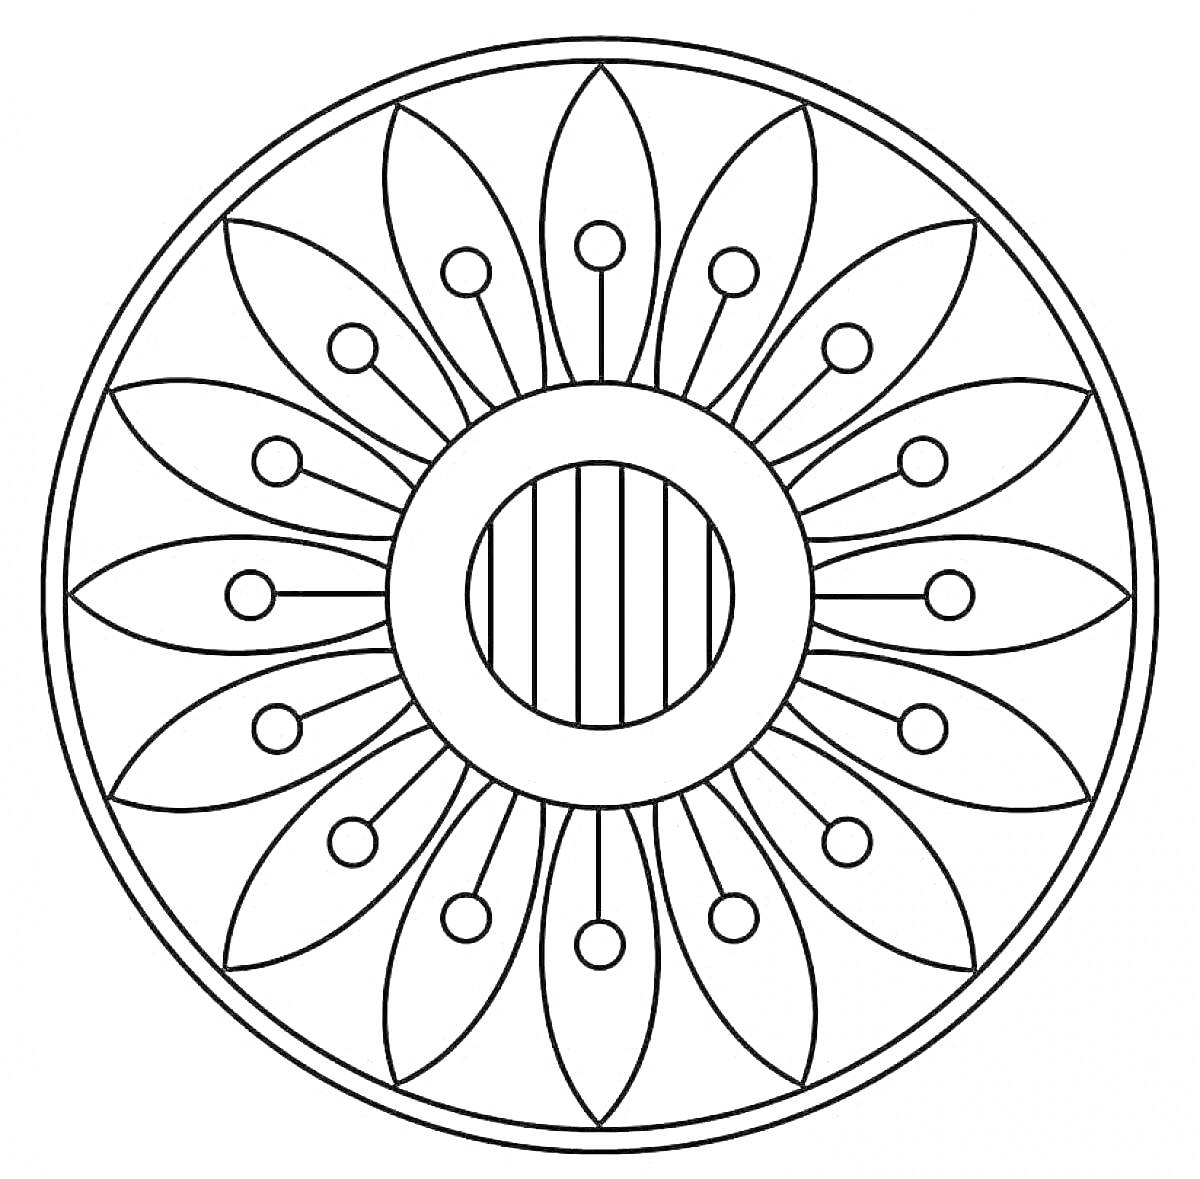 Раскраска Цветочный узор с кругами и полосами внутри круга